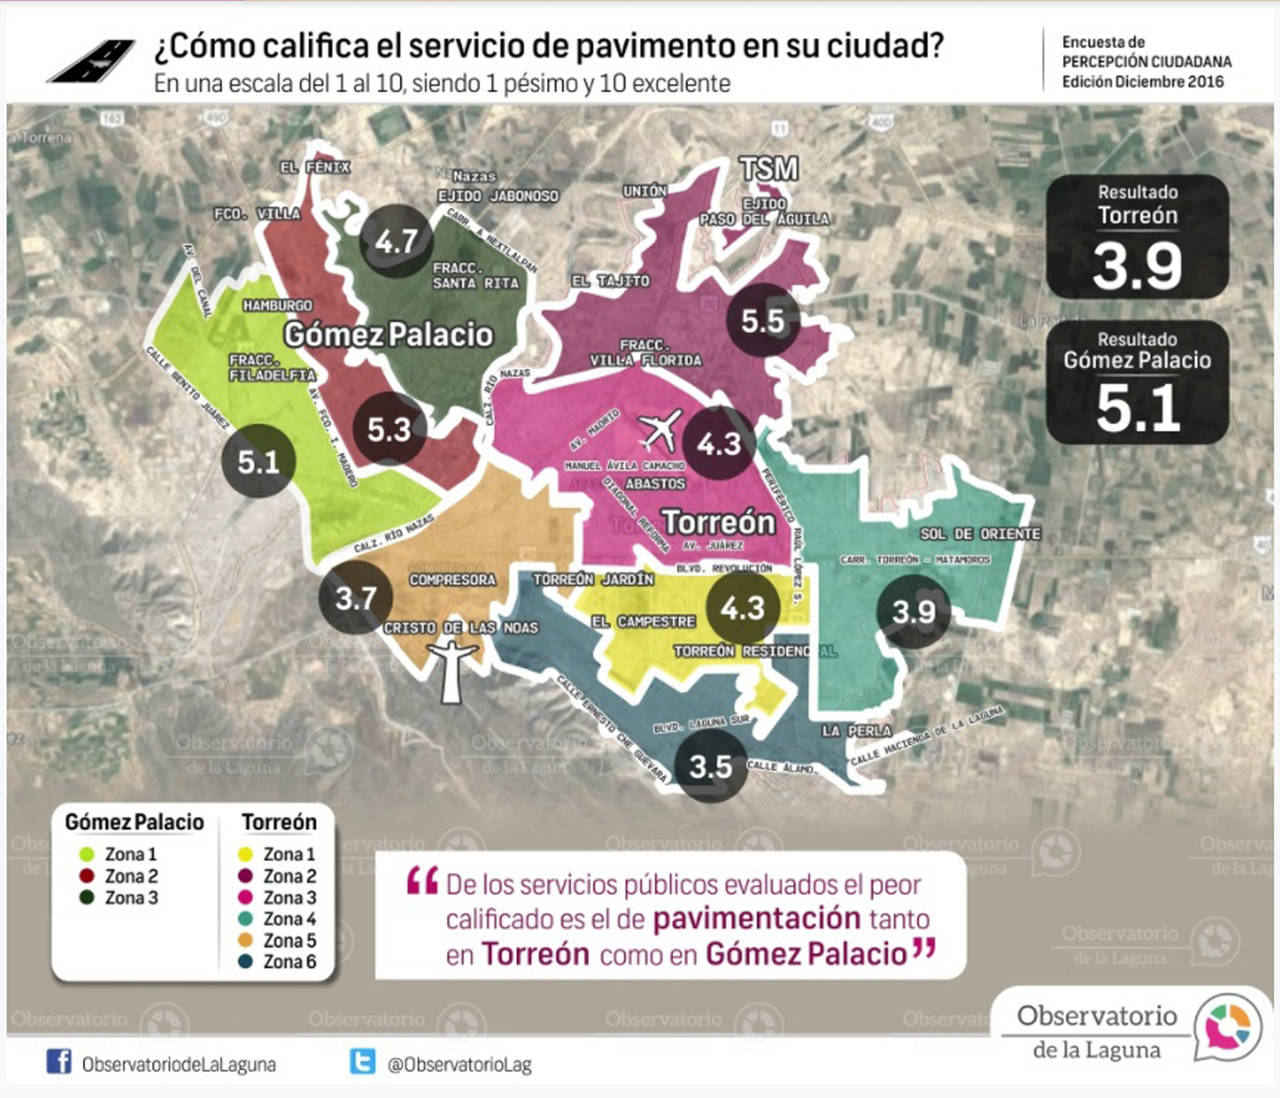 Por baches. El servicio de pavimento es el peor evaluado, tanto en Torreón como en Gómez Palacio, en la encuesta del Observatorio. (CORTESÍA)